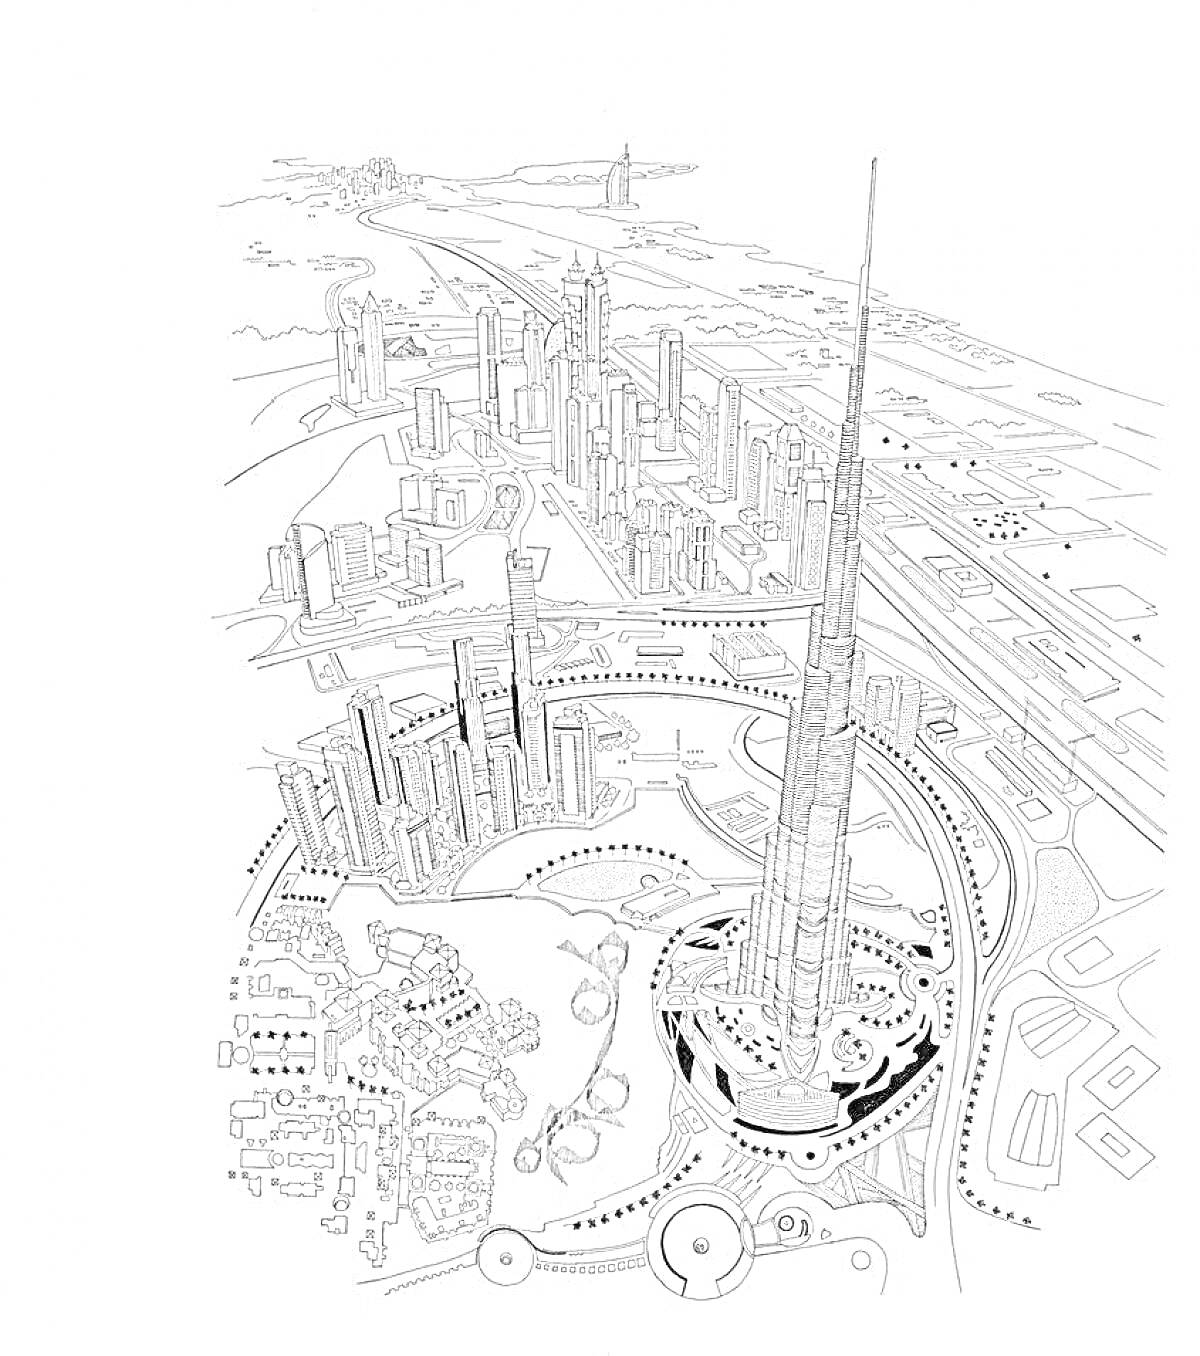 Раскраска Вид на небоскрёбы Дубая, включая Бурдж-Халифа и окружающие здания и инфраструктуру